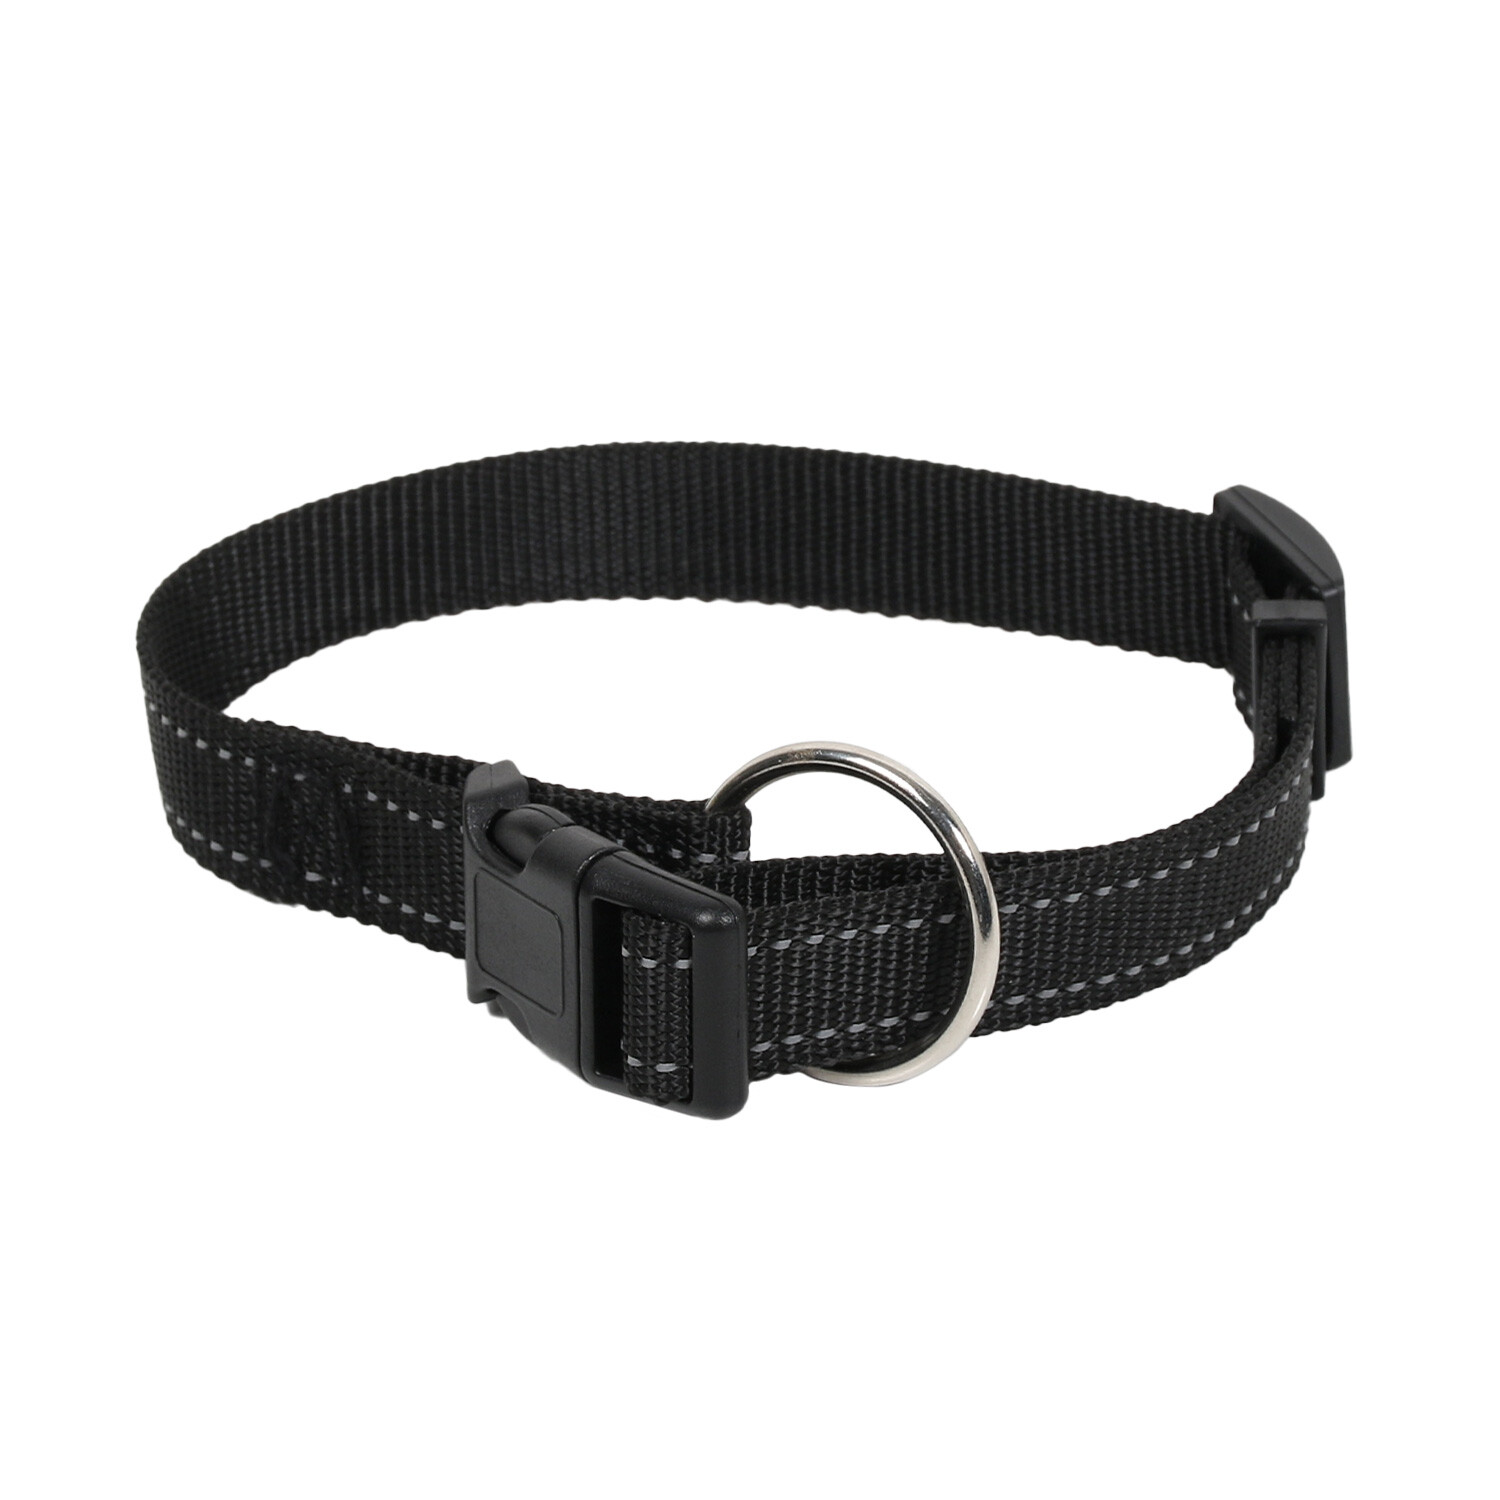 Reflective Nylon Dog Collar - Black / Medium Image